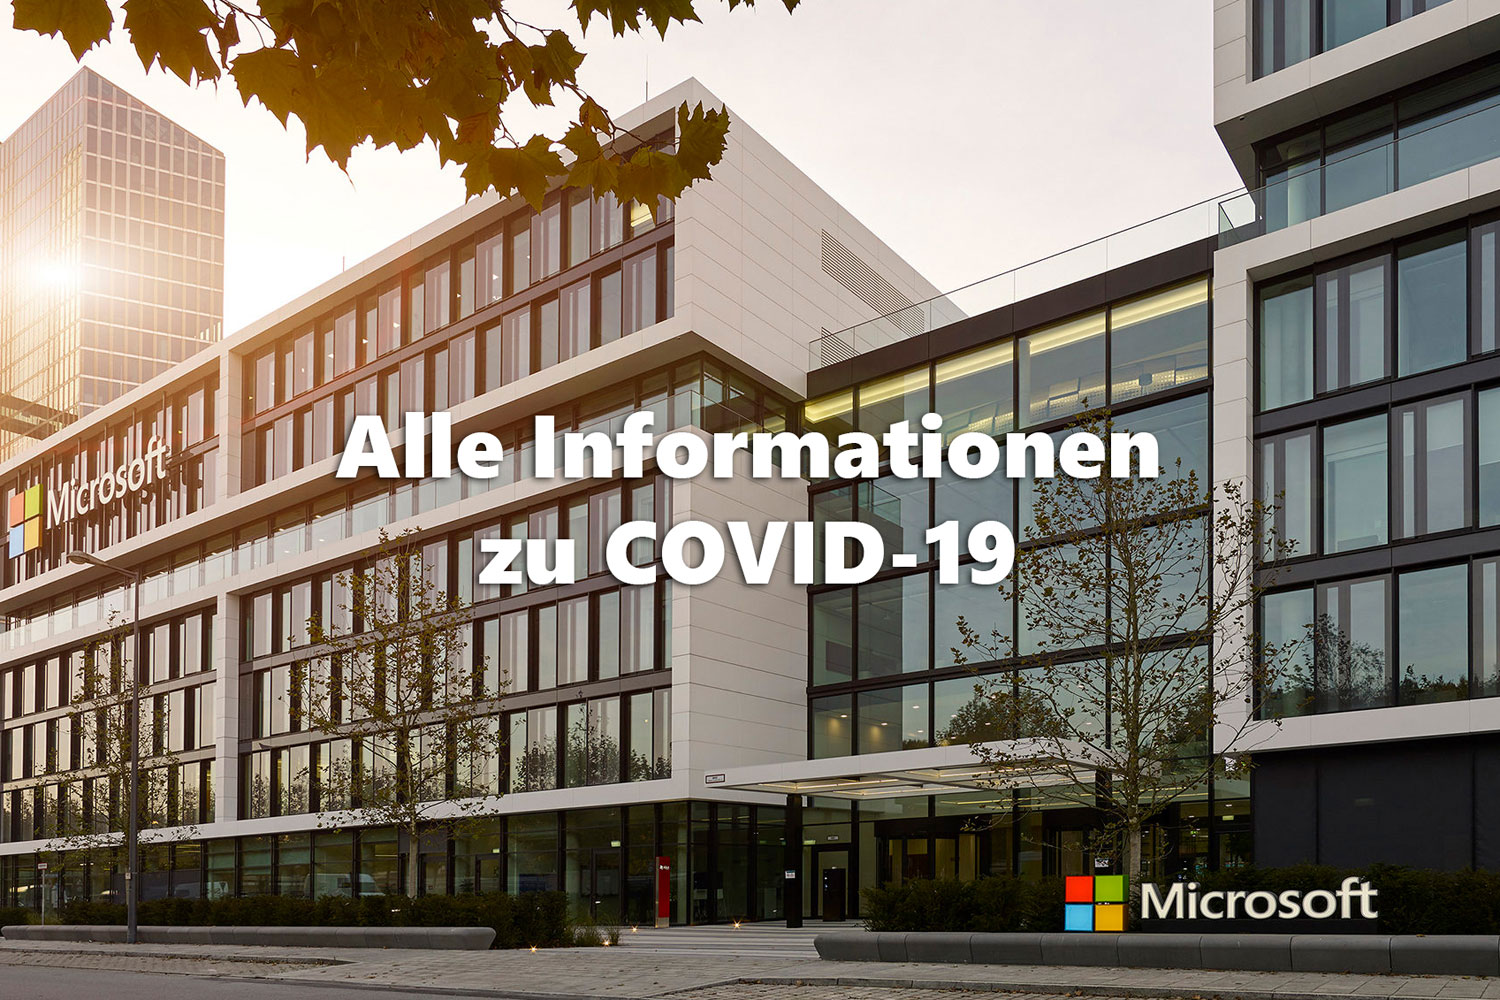  Bild der Microsoft Deutschlandzentrale, darauf der Schriftzug Alle Informationen zu Covid-19